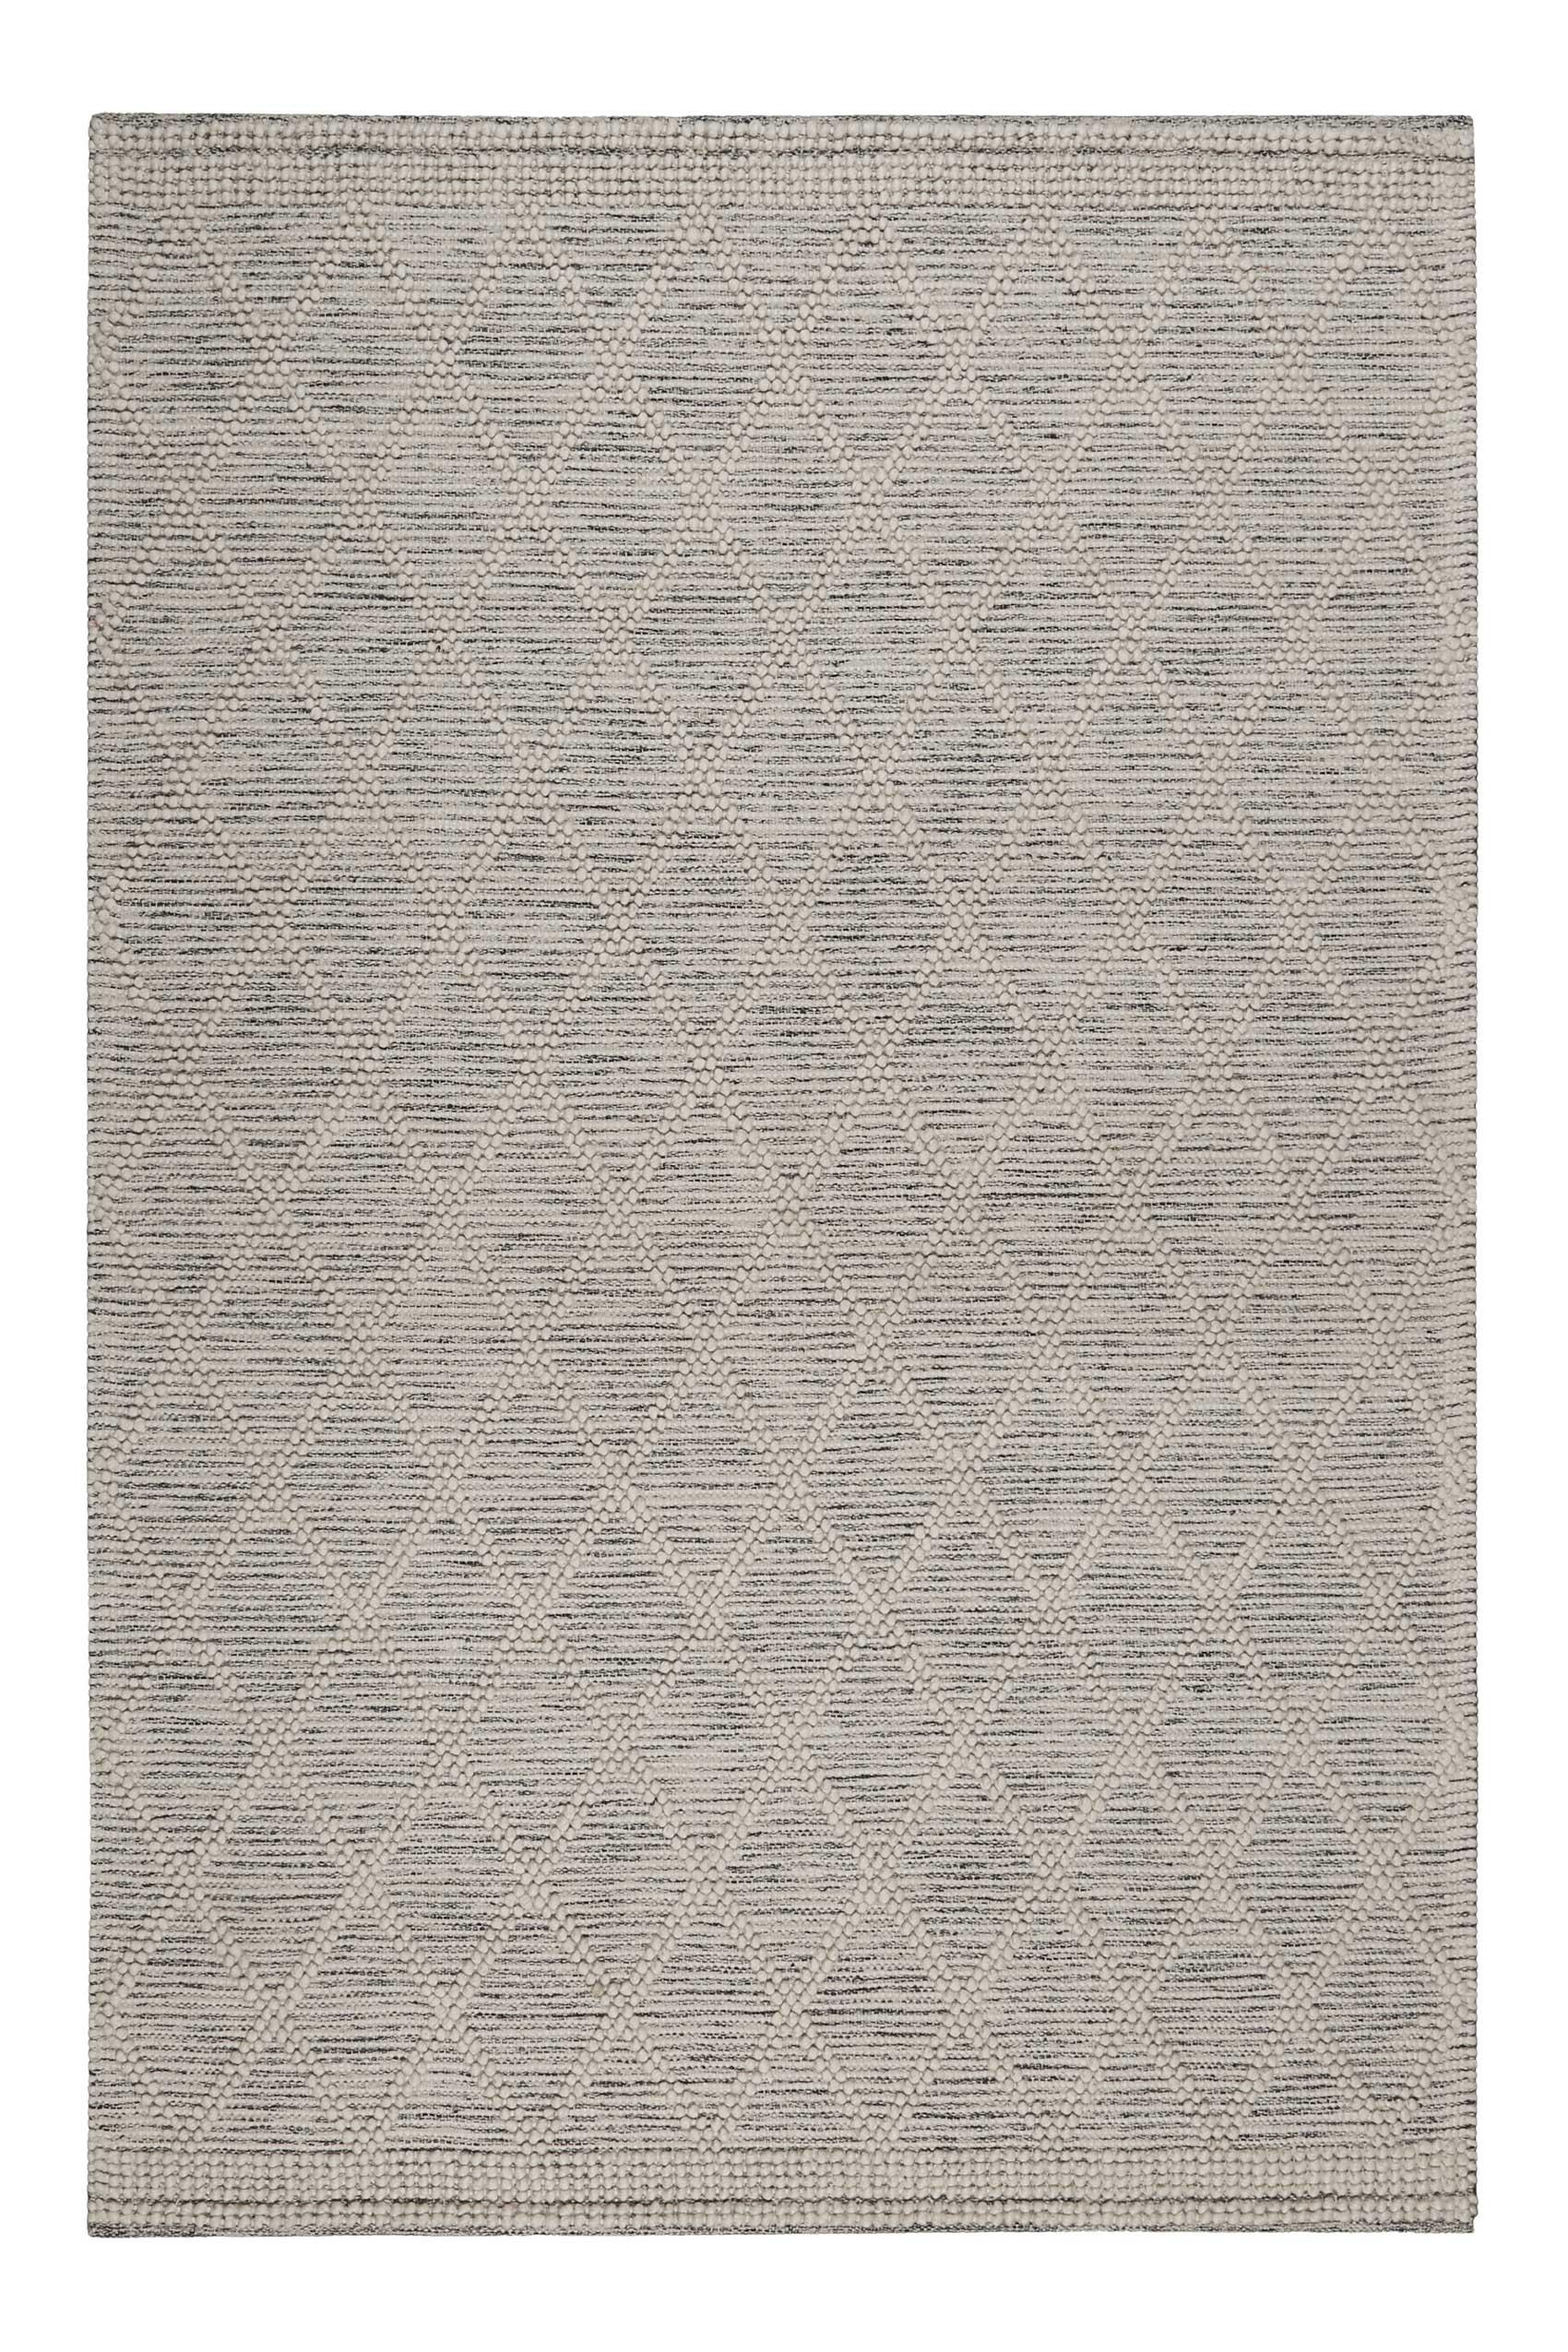 Esprit Teppich handgewebt Weiß Hellgrau aus Wolle » Amy « - Ansicht 1